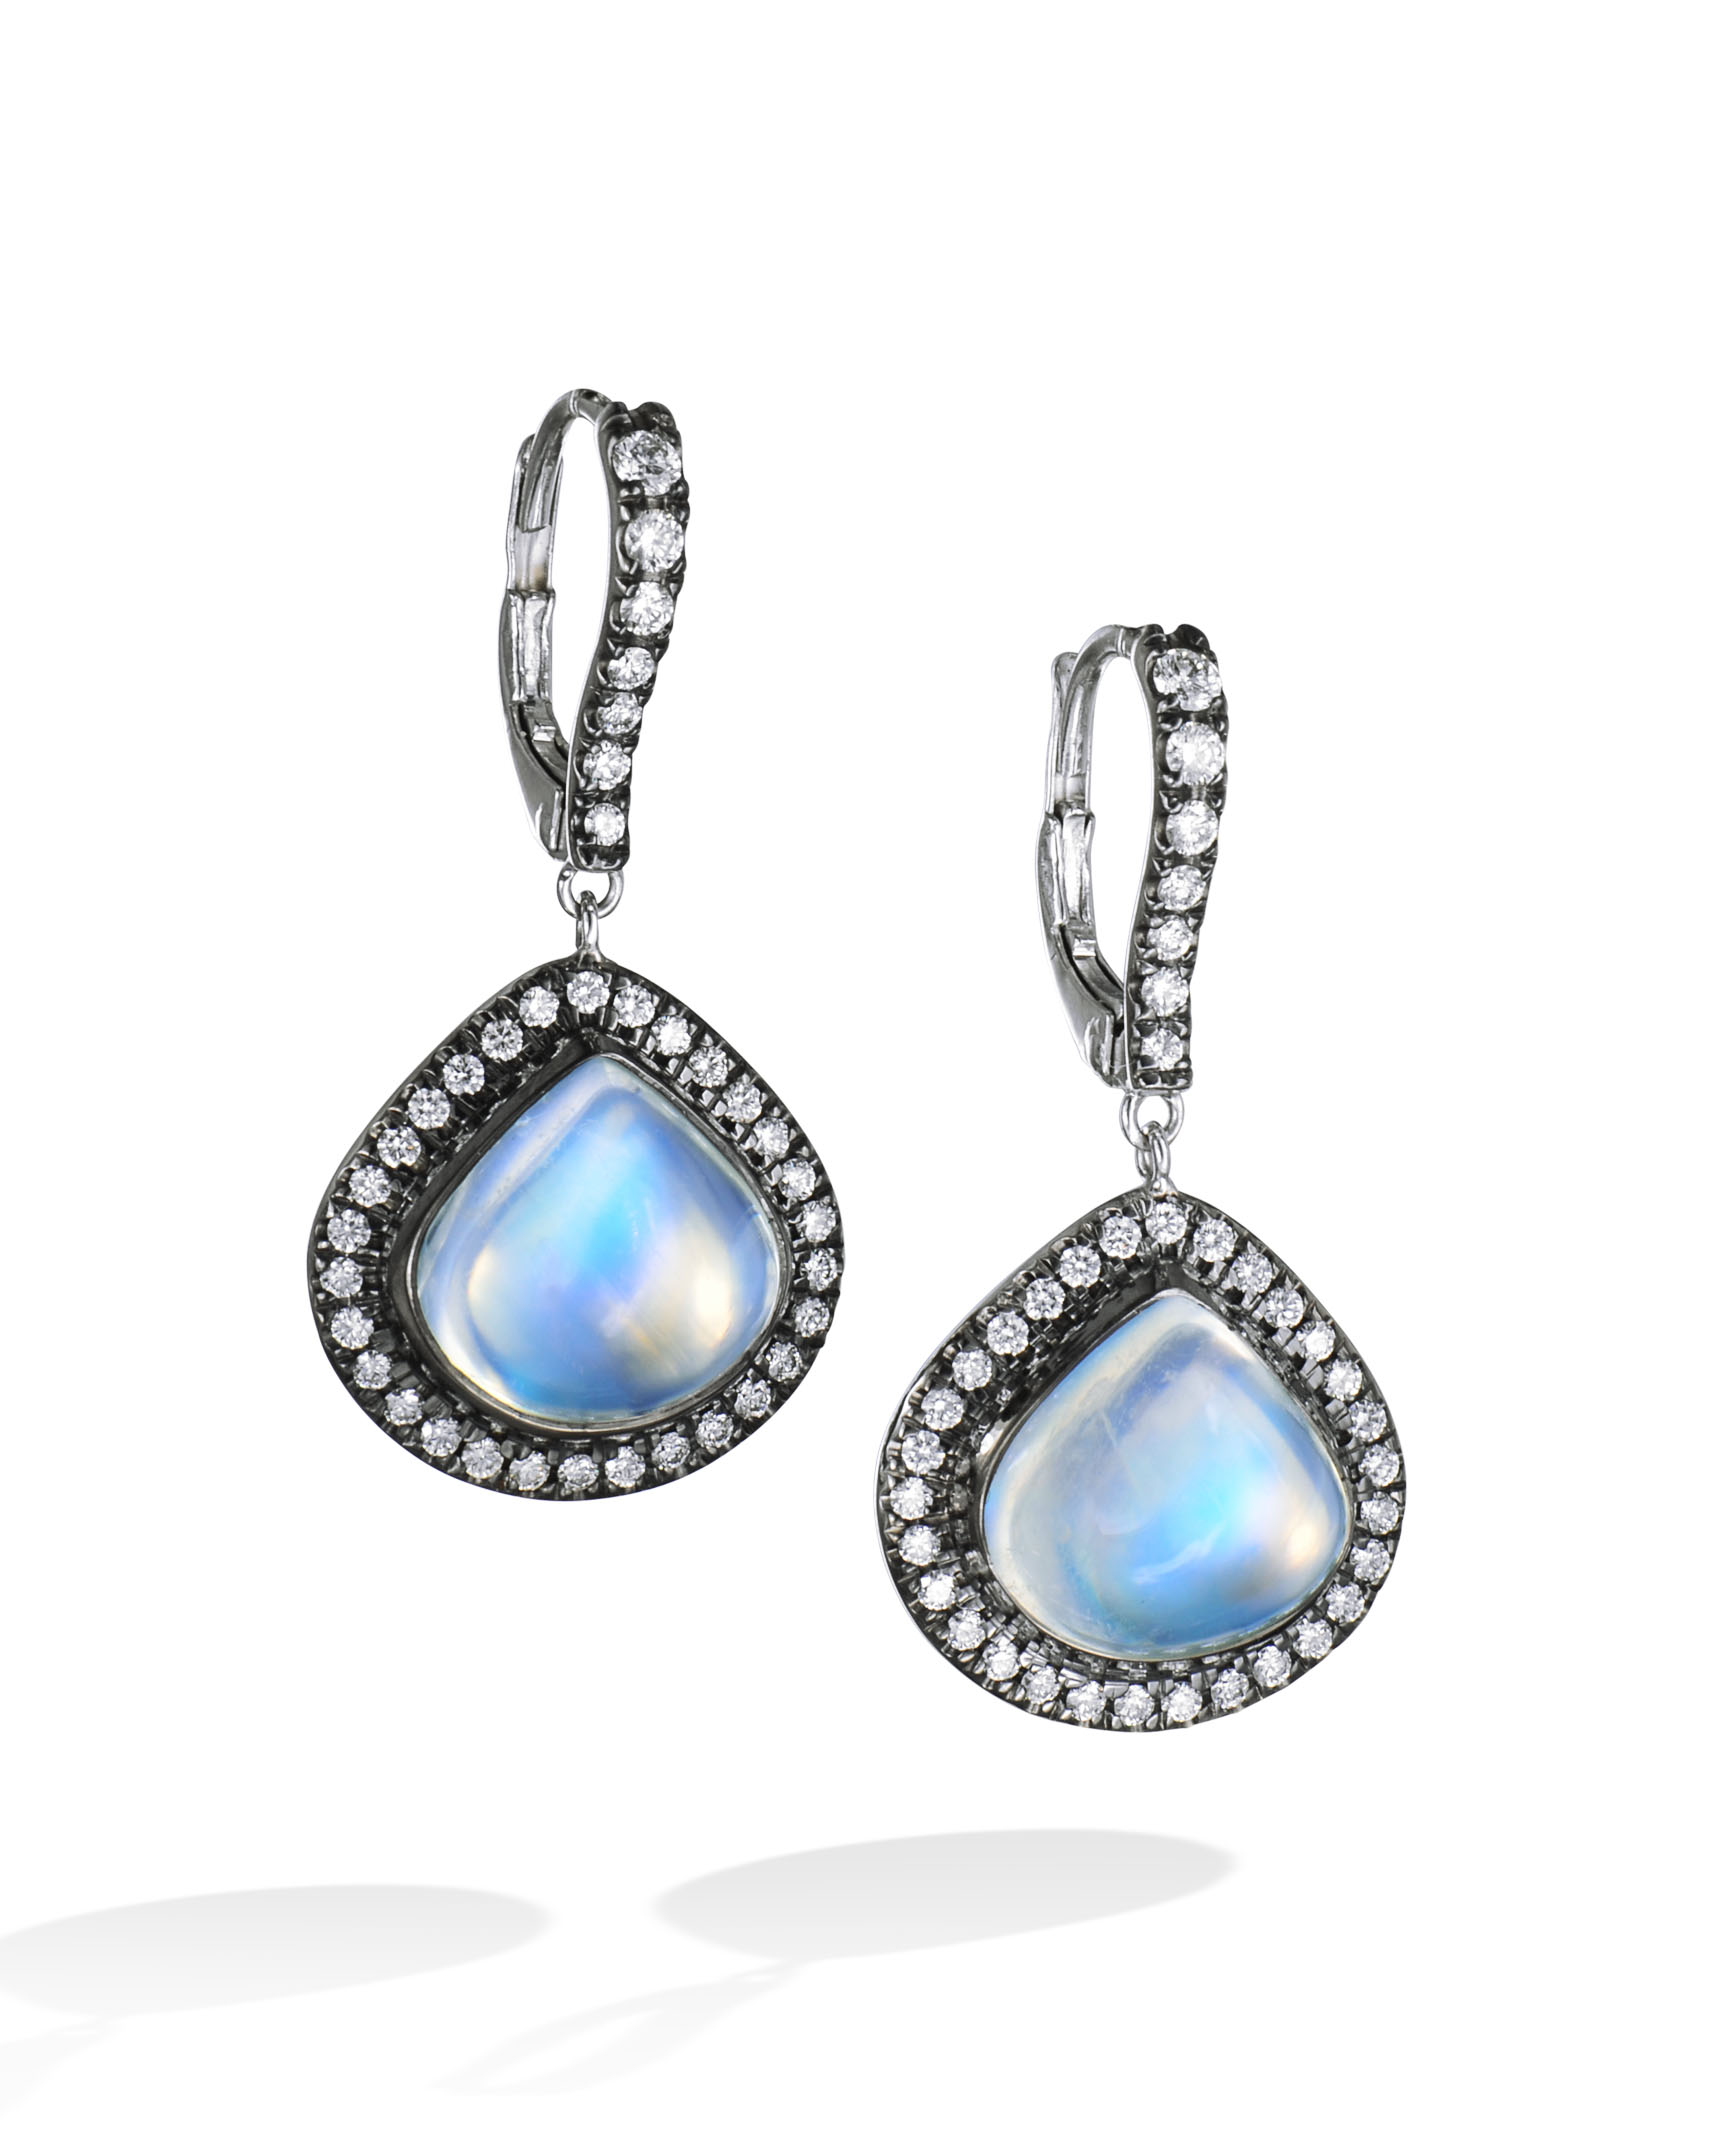 Royal Blue Moonstone and Diamond Earrings - Turgeon Raine